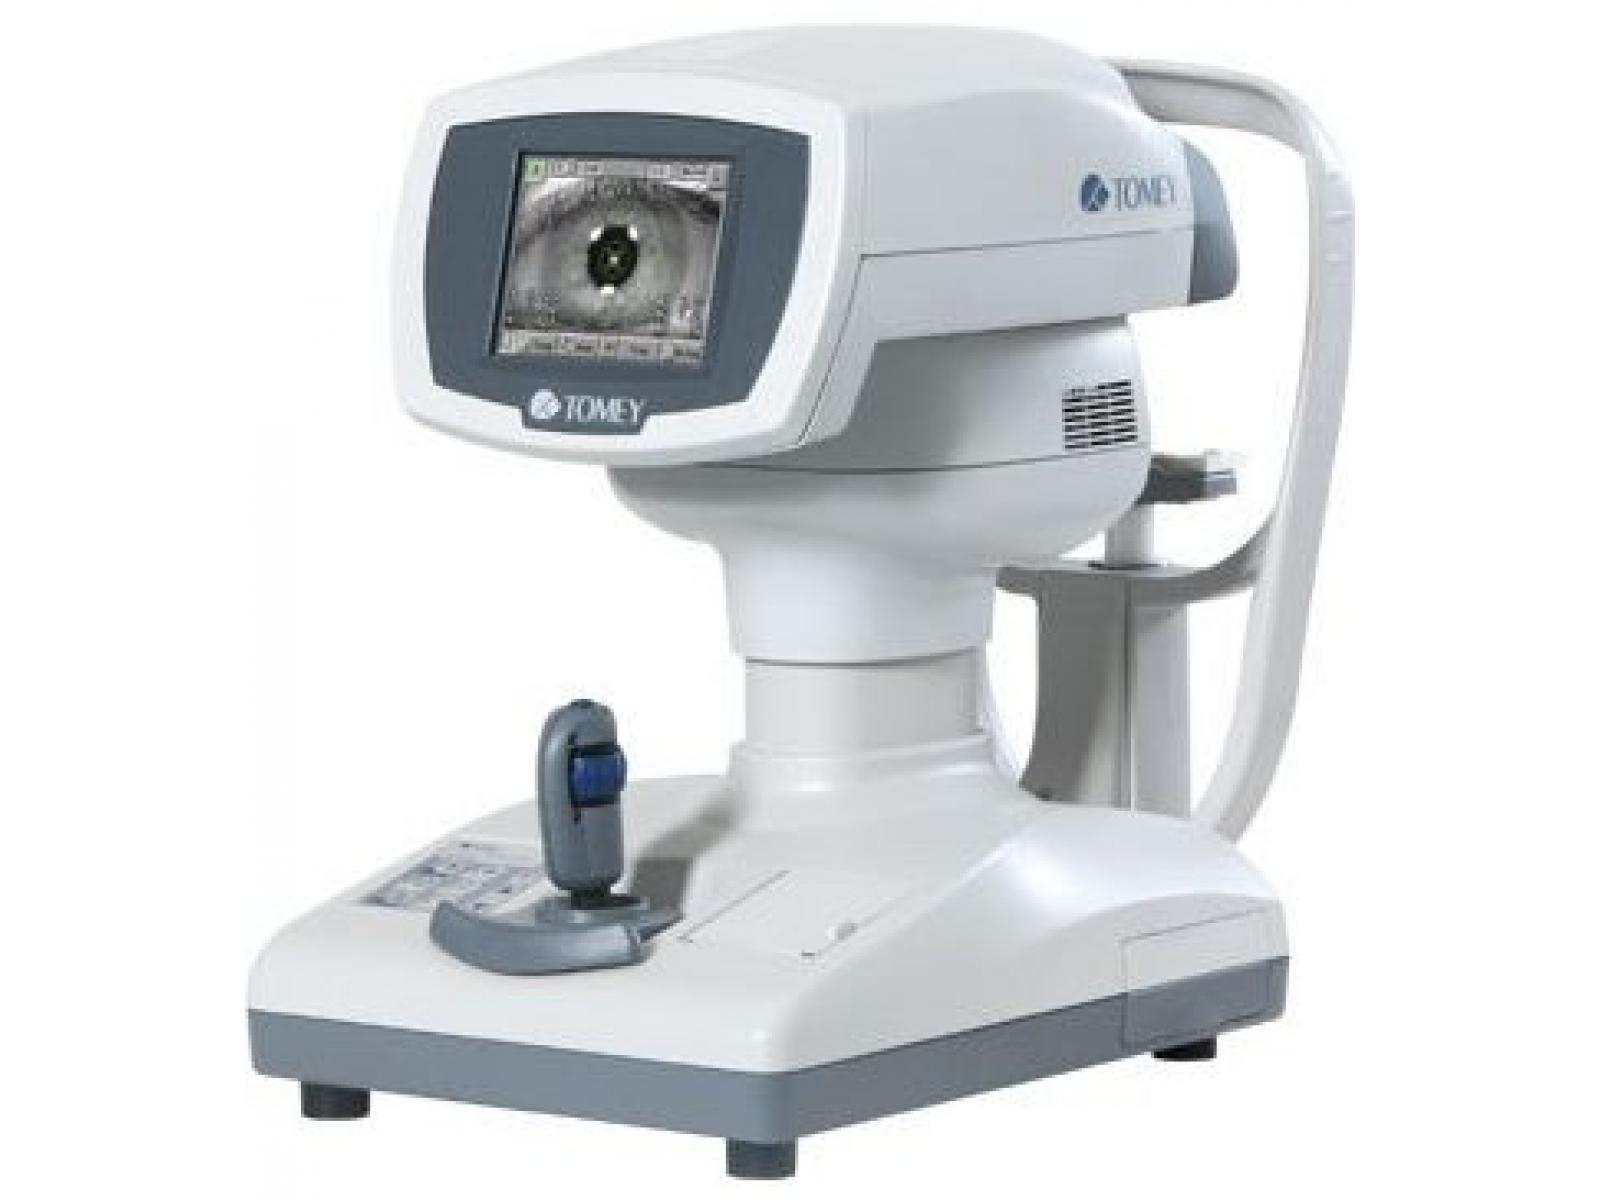 Irene optik-centru de diagnostic oftalmologic - autorefracto-keratometru_tomey.jpg